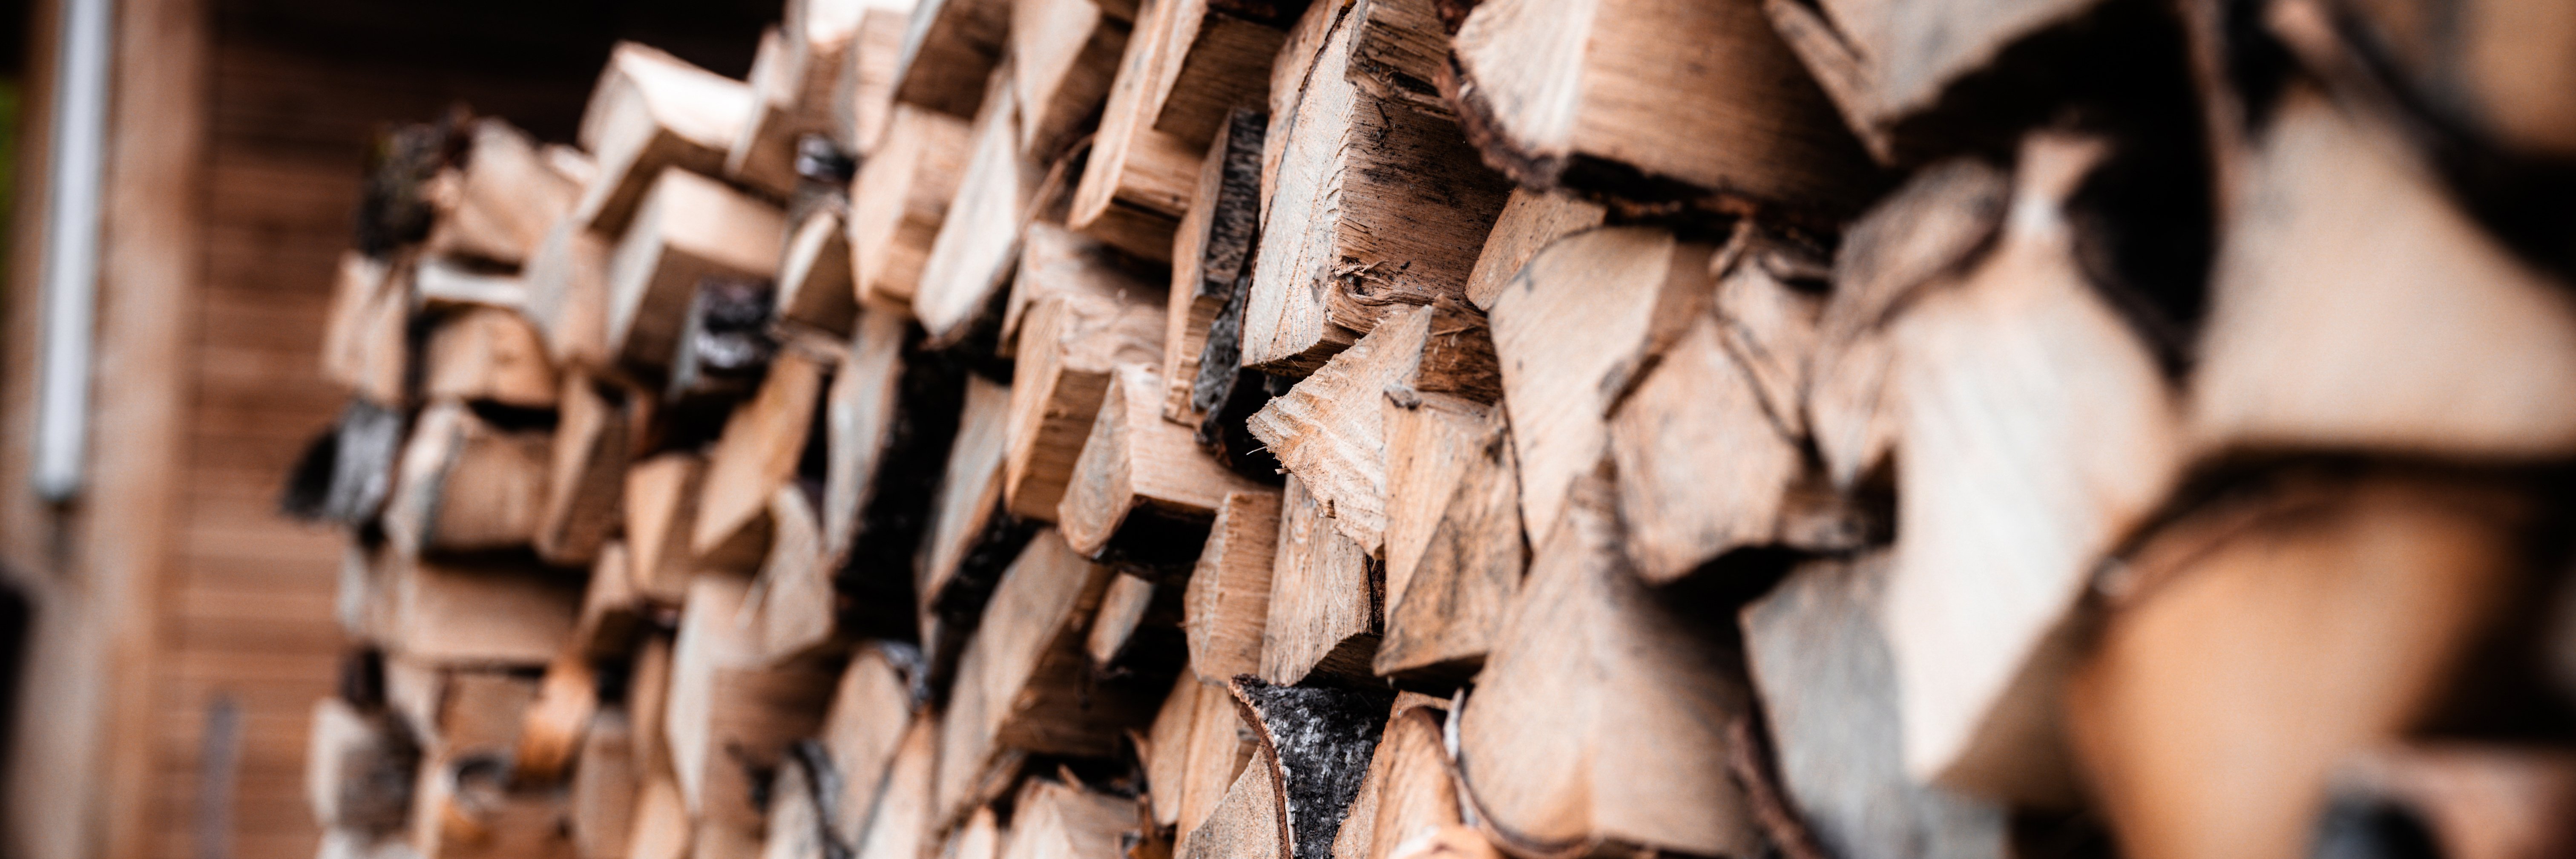 firewood-pile